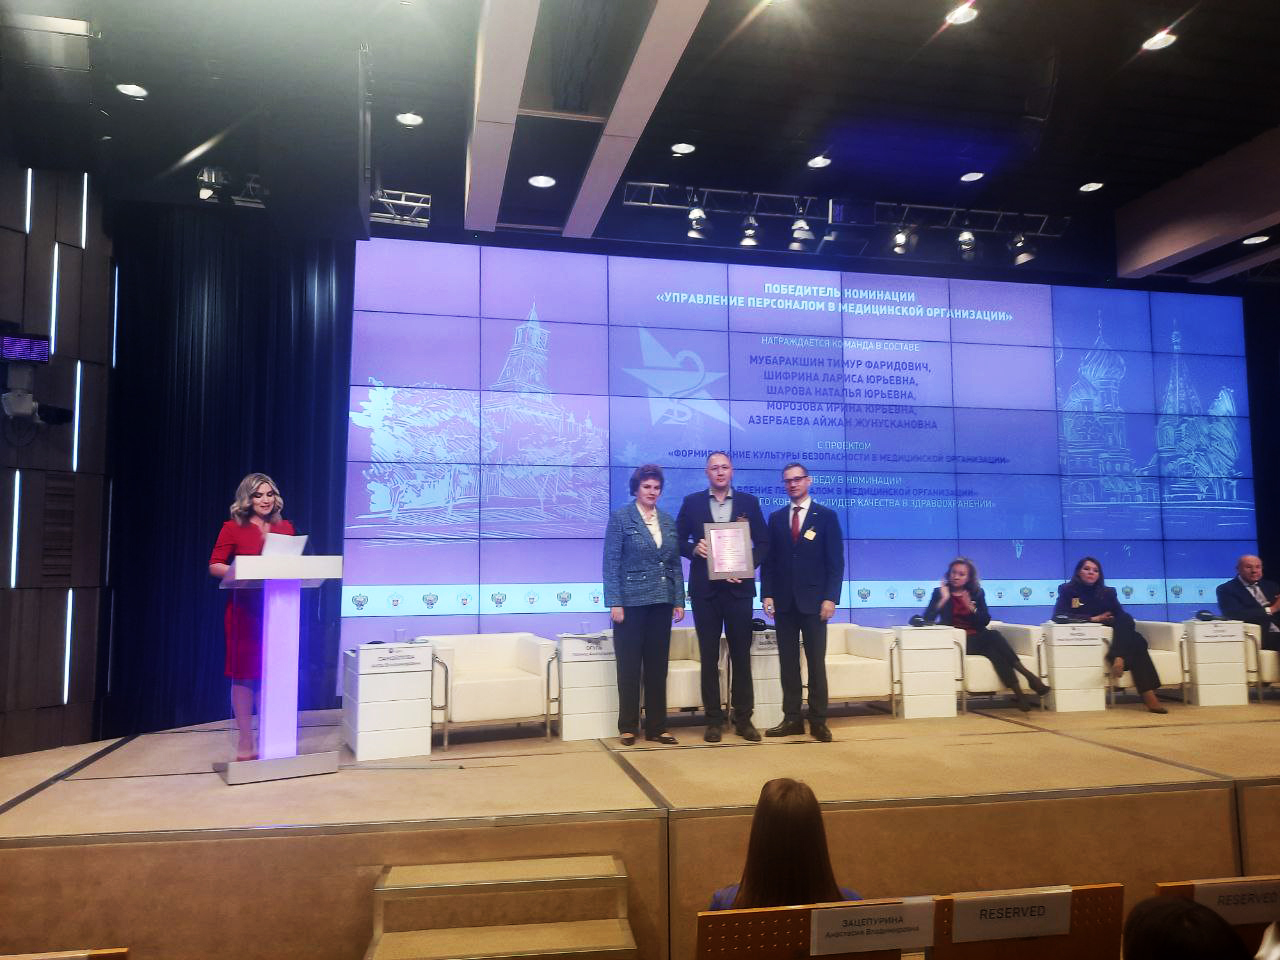 Клиника Hadassah - победитель Всероссийского конкурса “Лидер качества в здравоохранении”